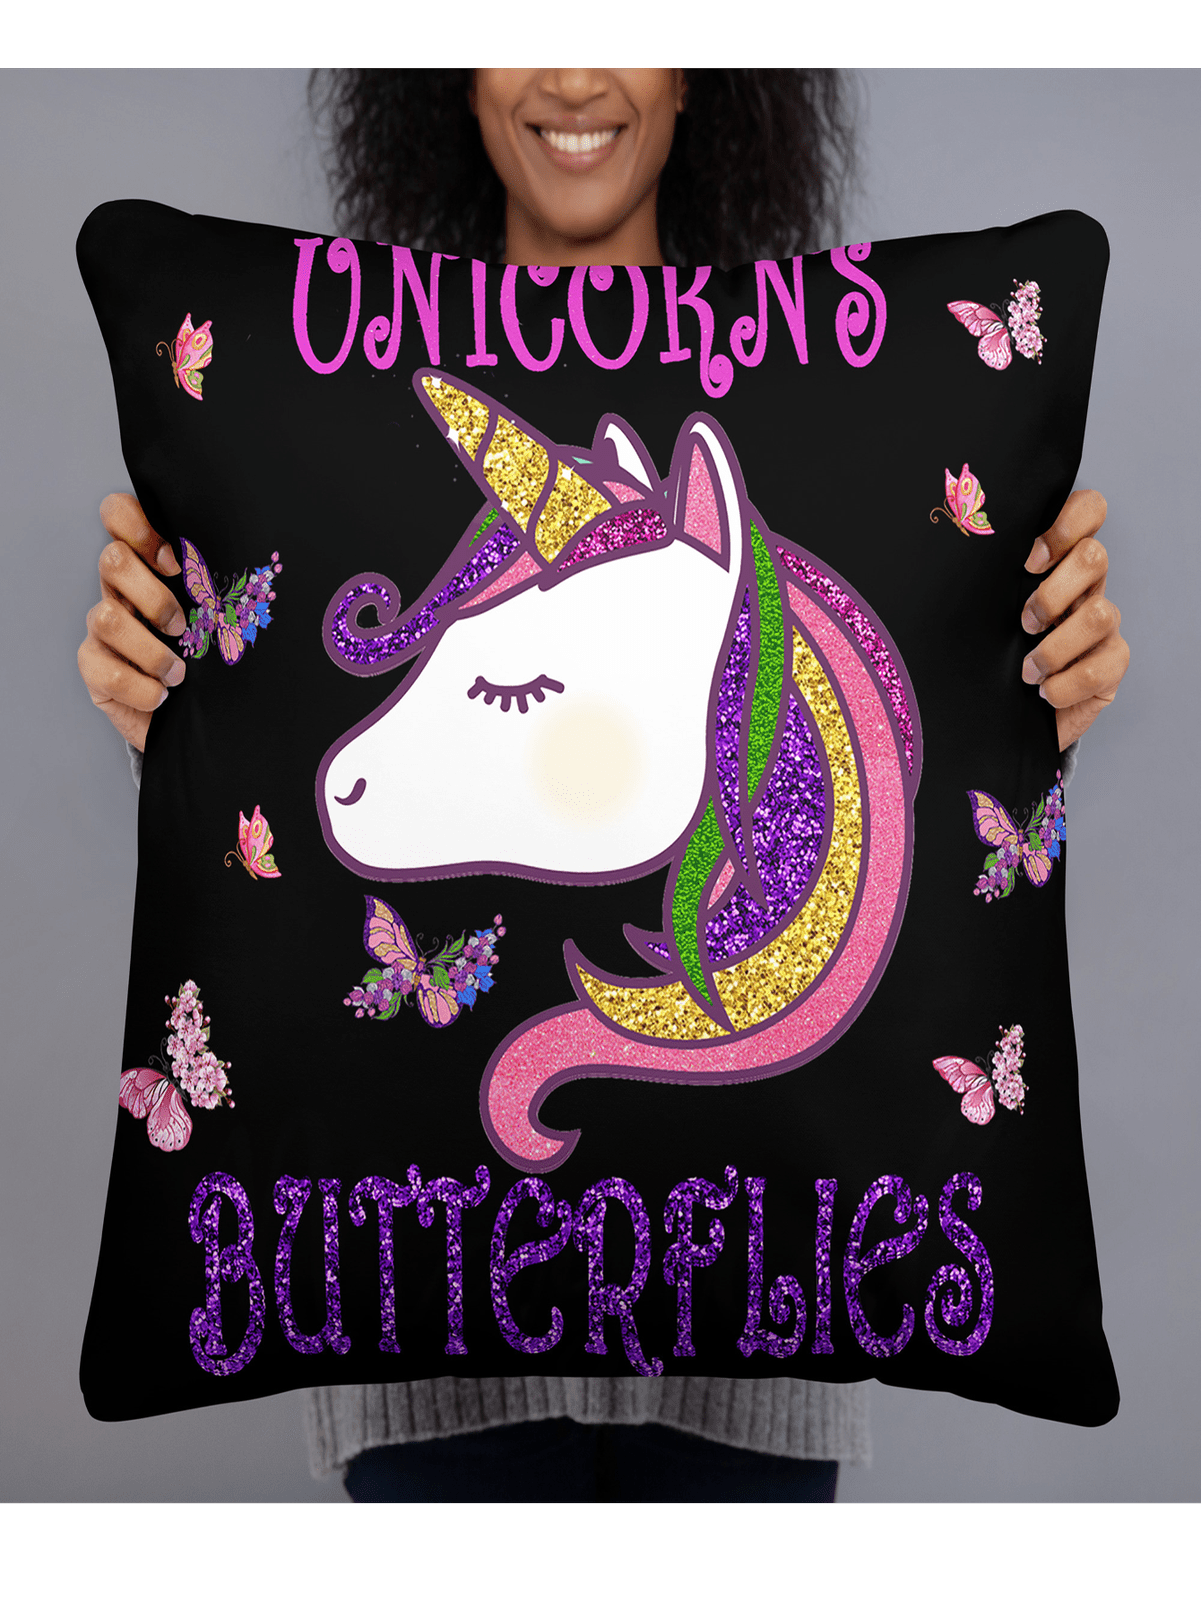 Unicorns and Butterflies - Girls Throw Pillows